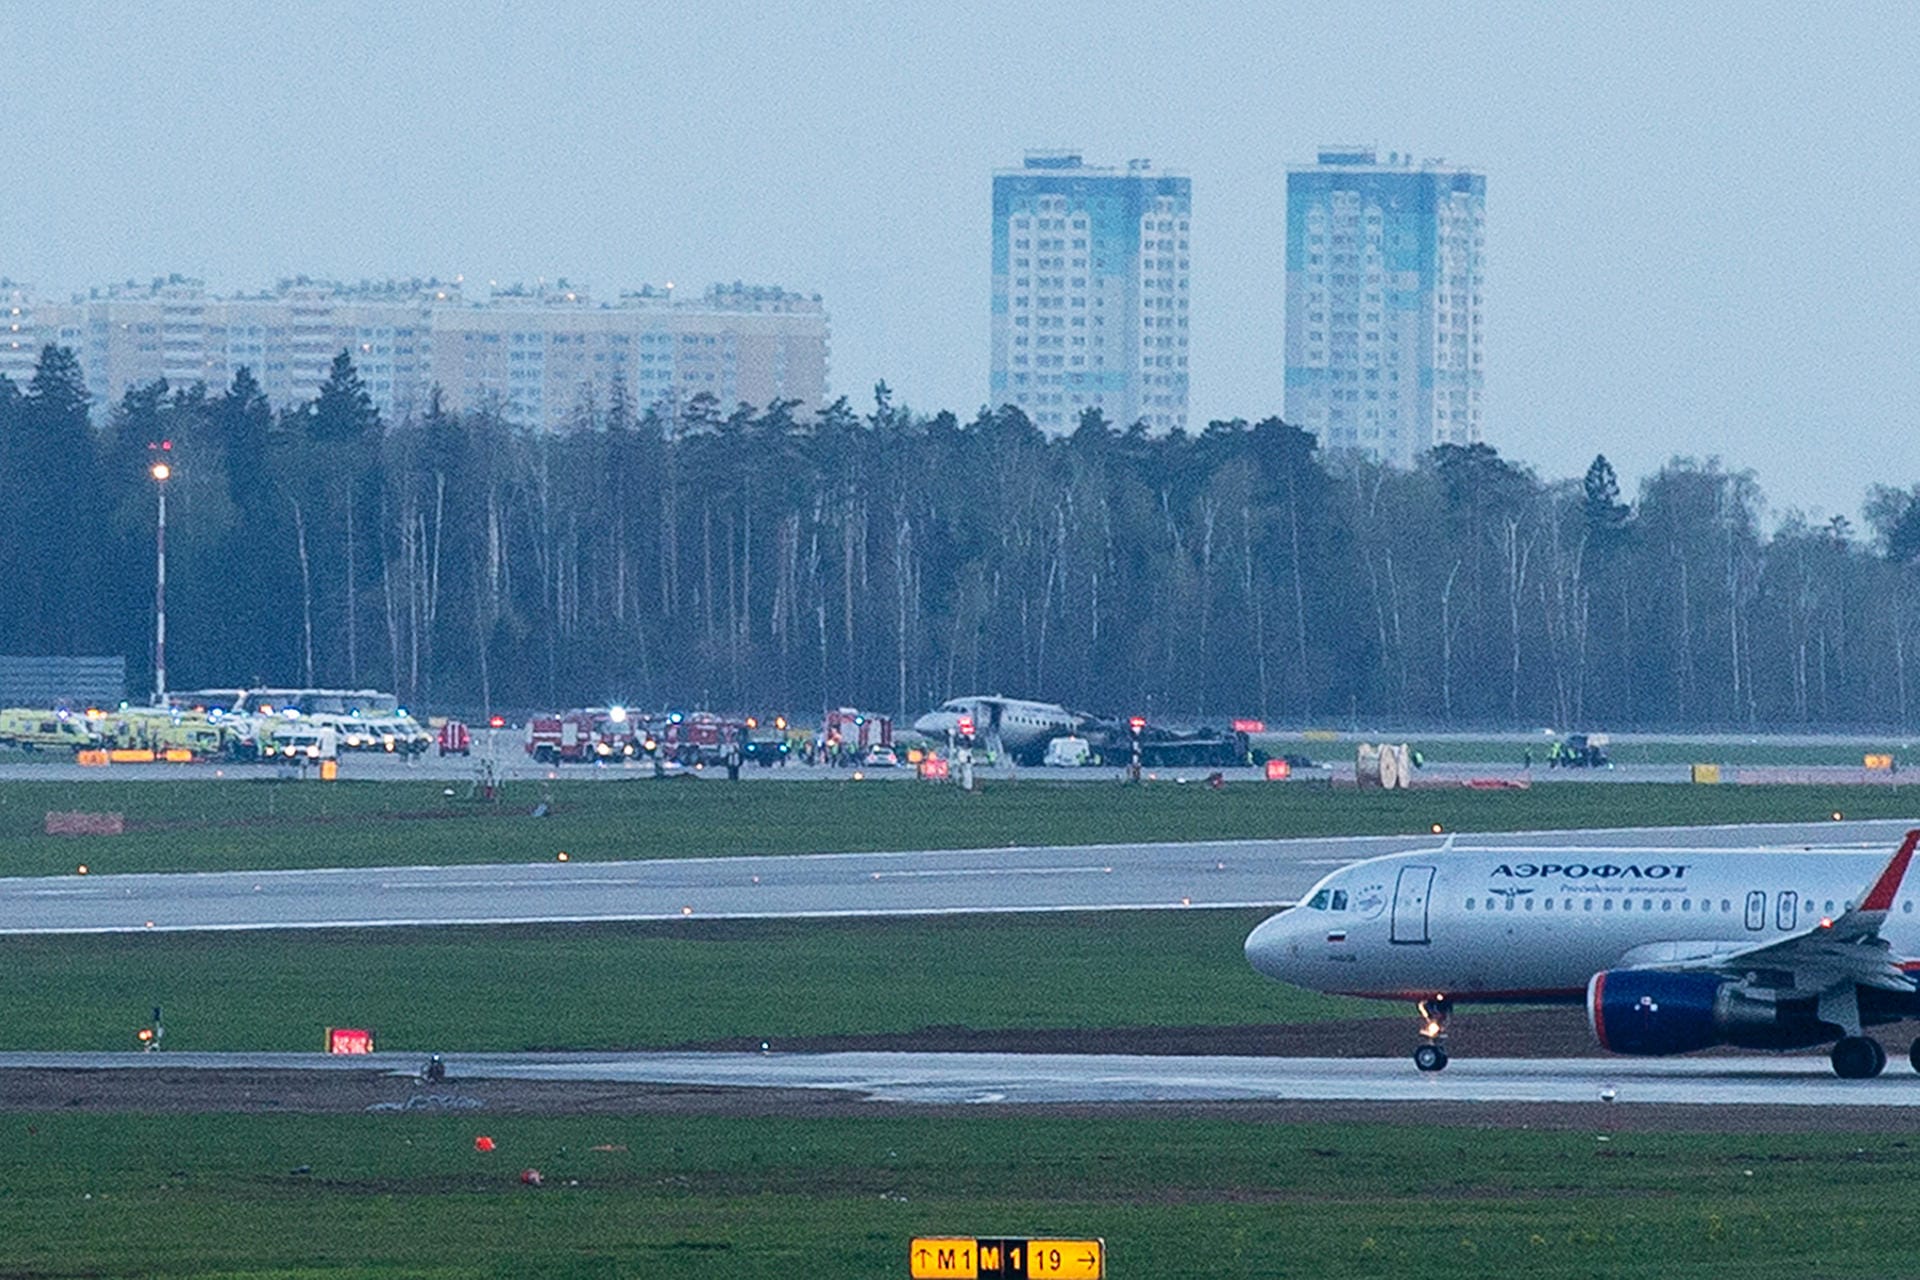 Die Aeroflot-Maschine des Typs Suchoi Superjet-100 hatte Berichten zufolge mehr als 70 Personen an Bord. Es wird von womöglich 13 Todesopfern berichtet.